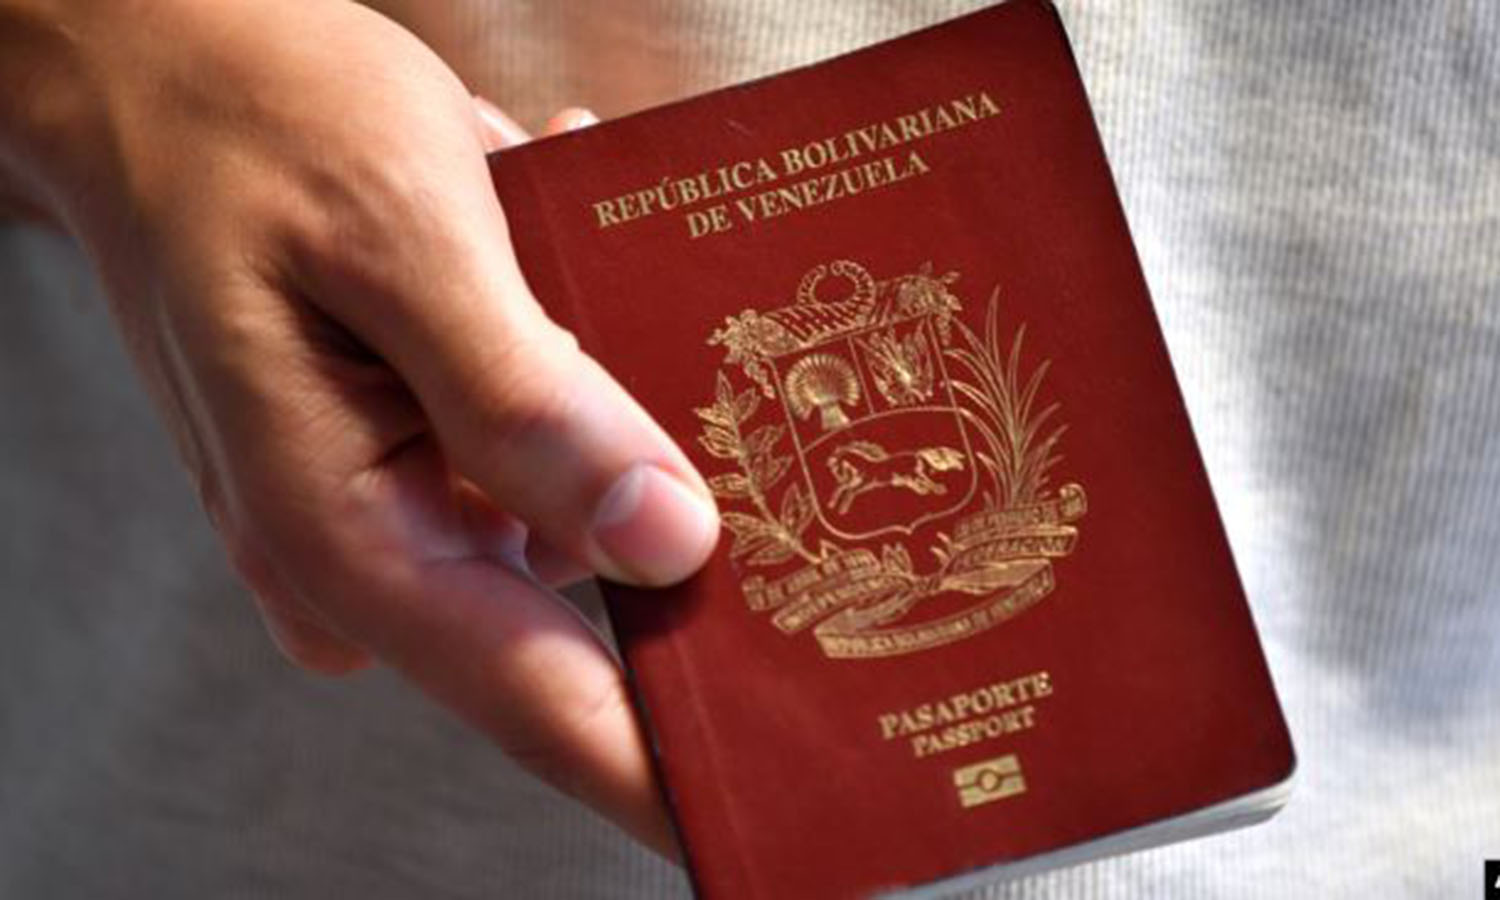 Pasaporte válido y documentos migratorios